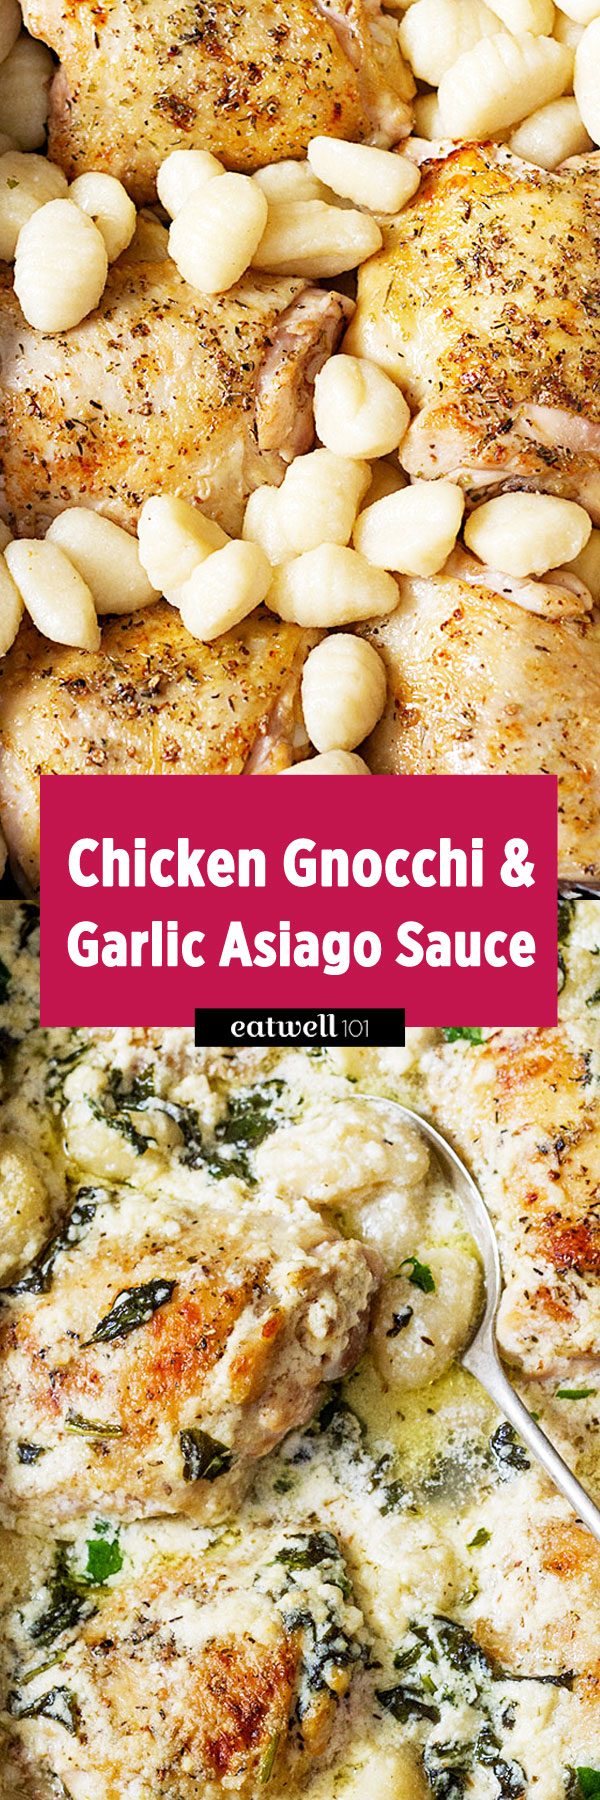 Baked Chicken Gnocchi Recipe #eatwell101 #recipe - #Spinach #Chicken #Gnocchi #Casserole with Cream Cheese and #Mozzarella